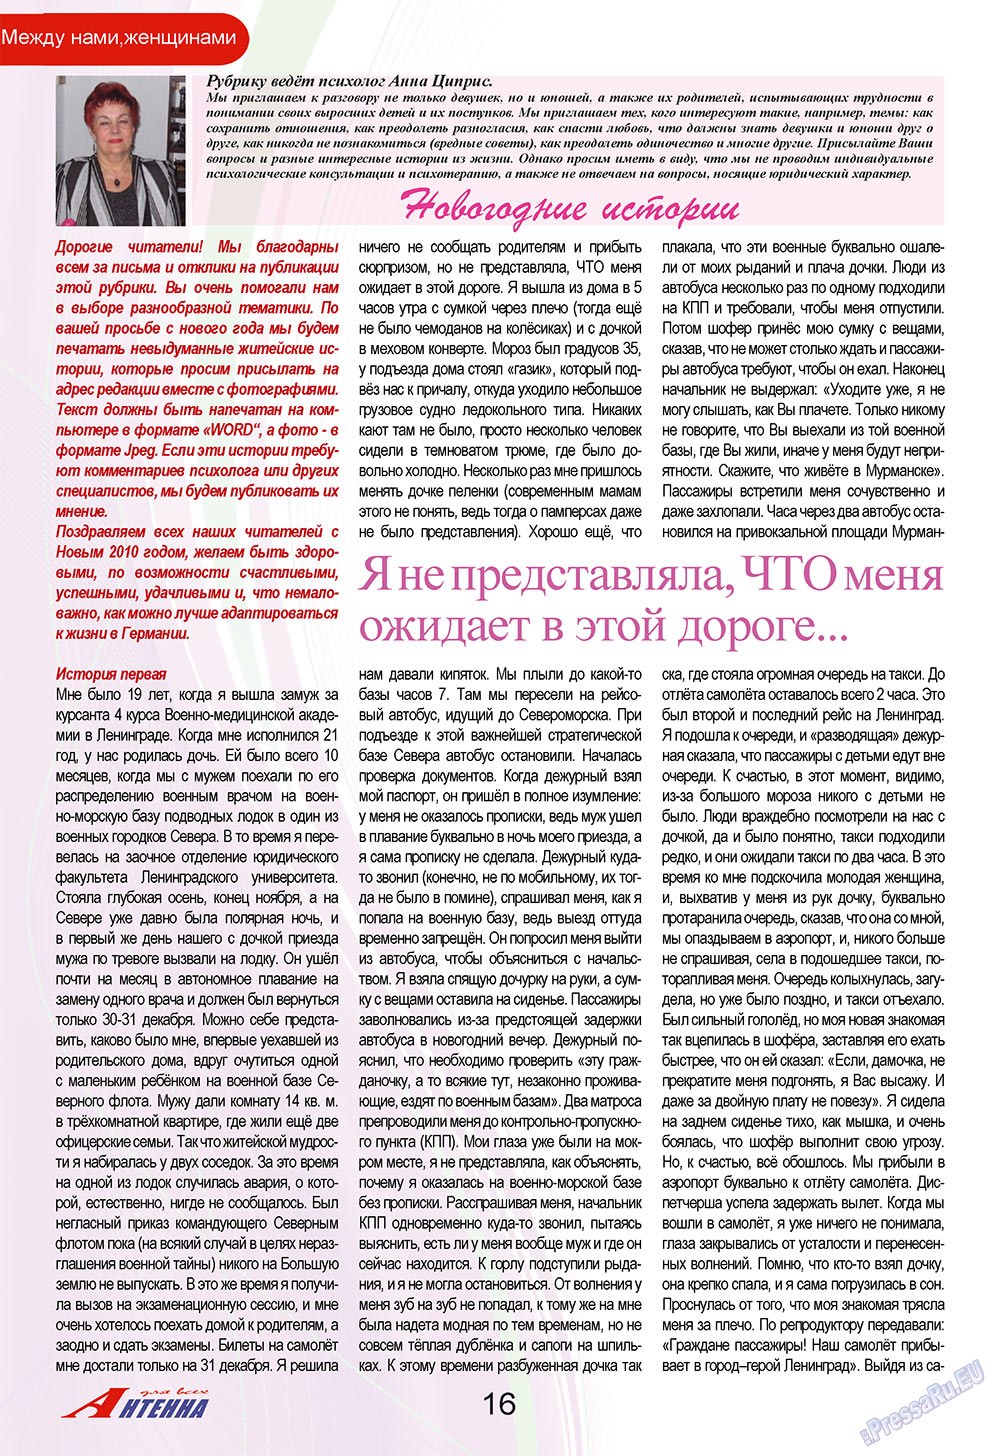 Антенна, журнал. 2009 №12 стр.16